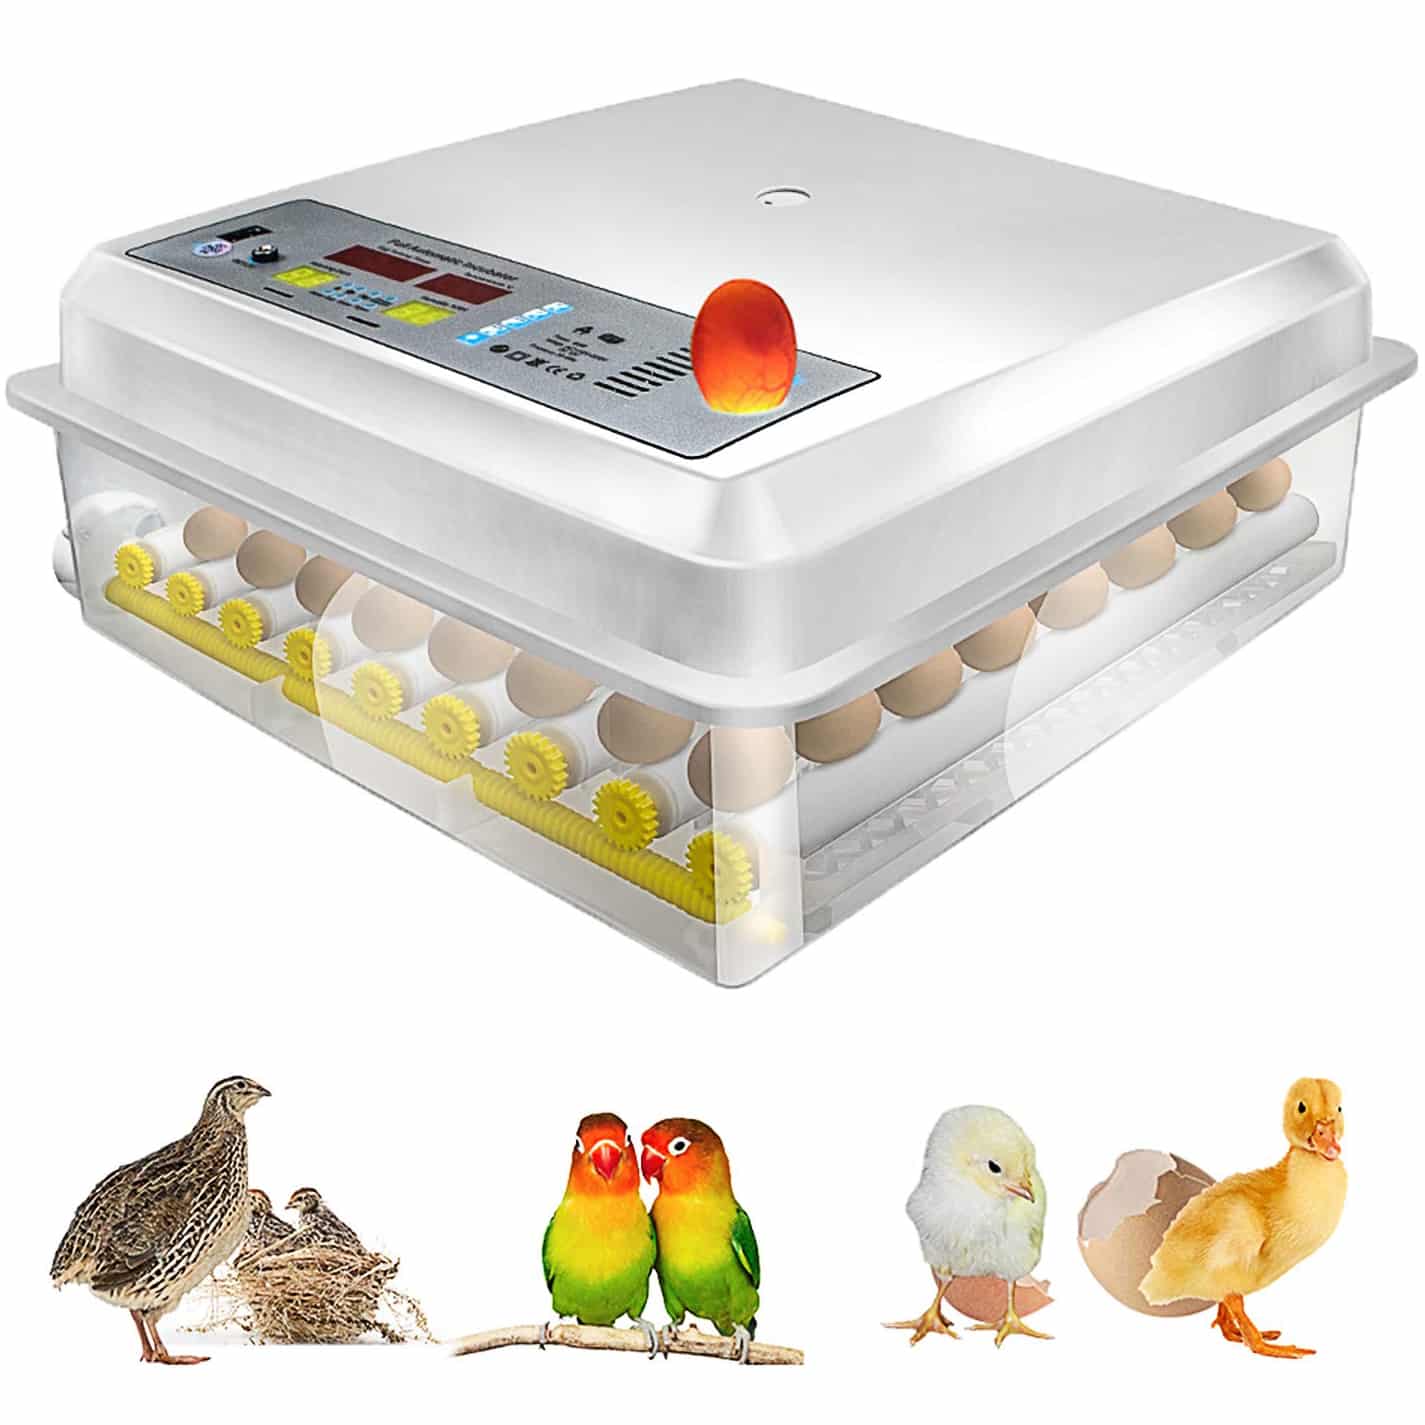 Инкубатор для яиц Egg incubator. Инкубатор Egg Box 3000. MS 36 инкубатор. Инкубатор для яиц автоматический на 200 яиц.